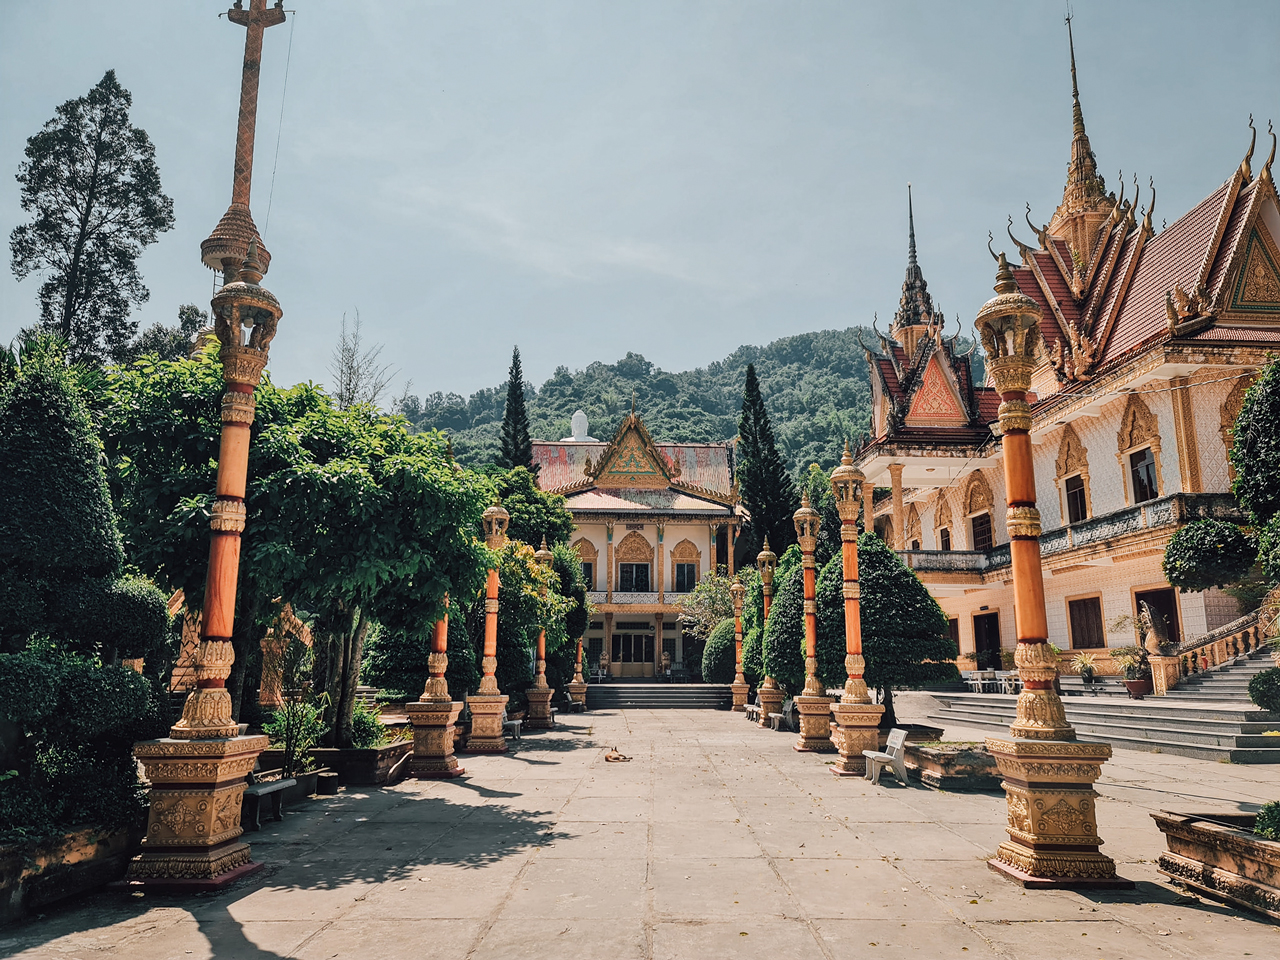 Sân chùa Ba Thê An Giang - Photo by Nguyễn Khải Trung